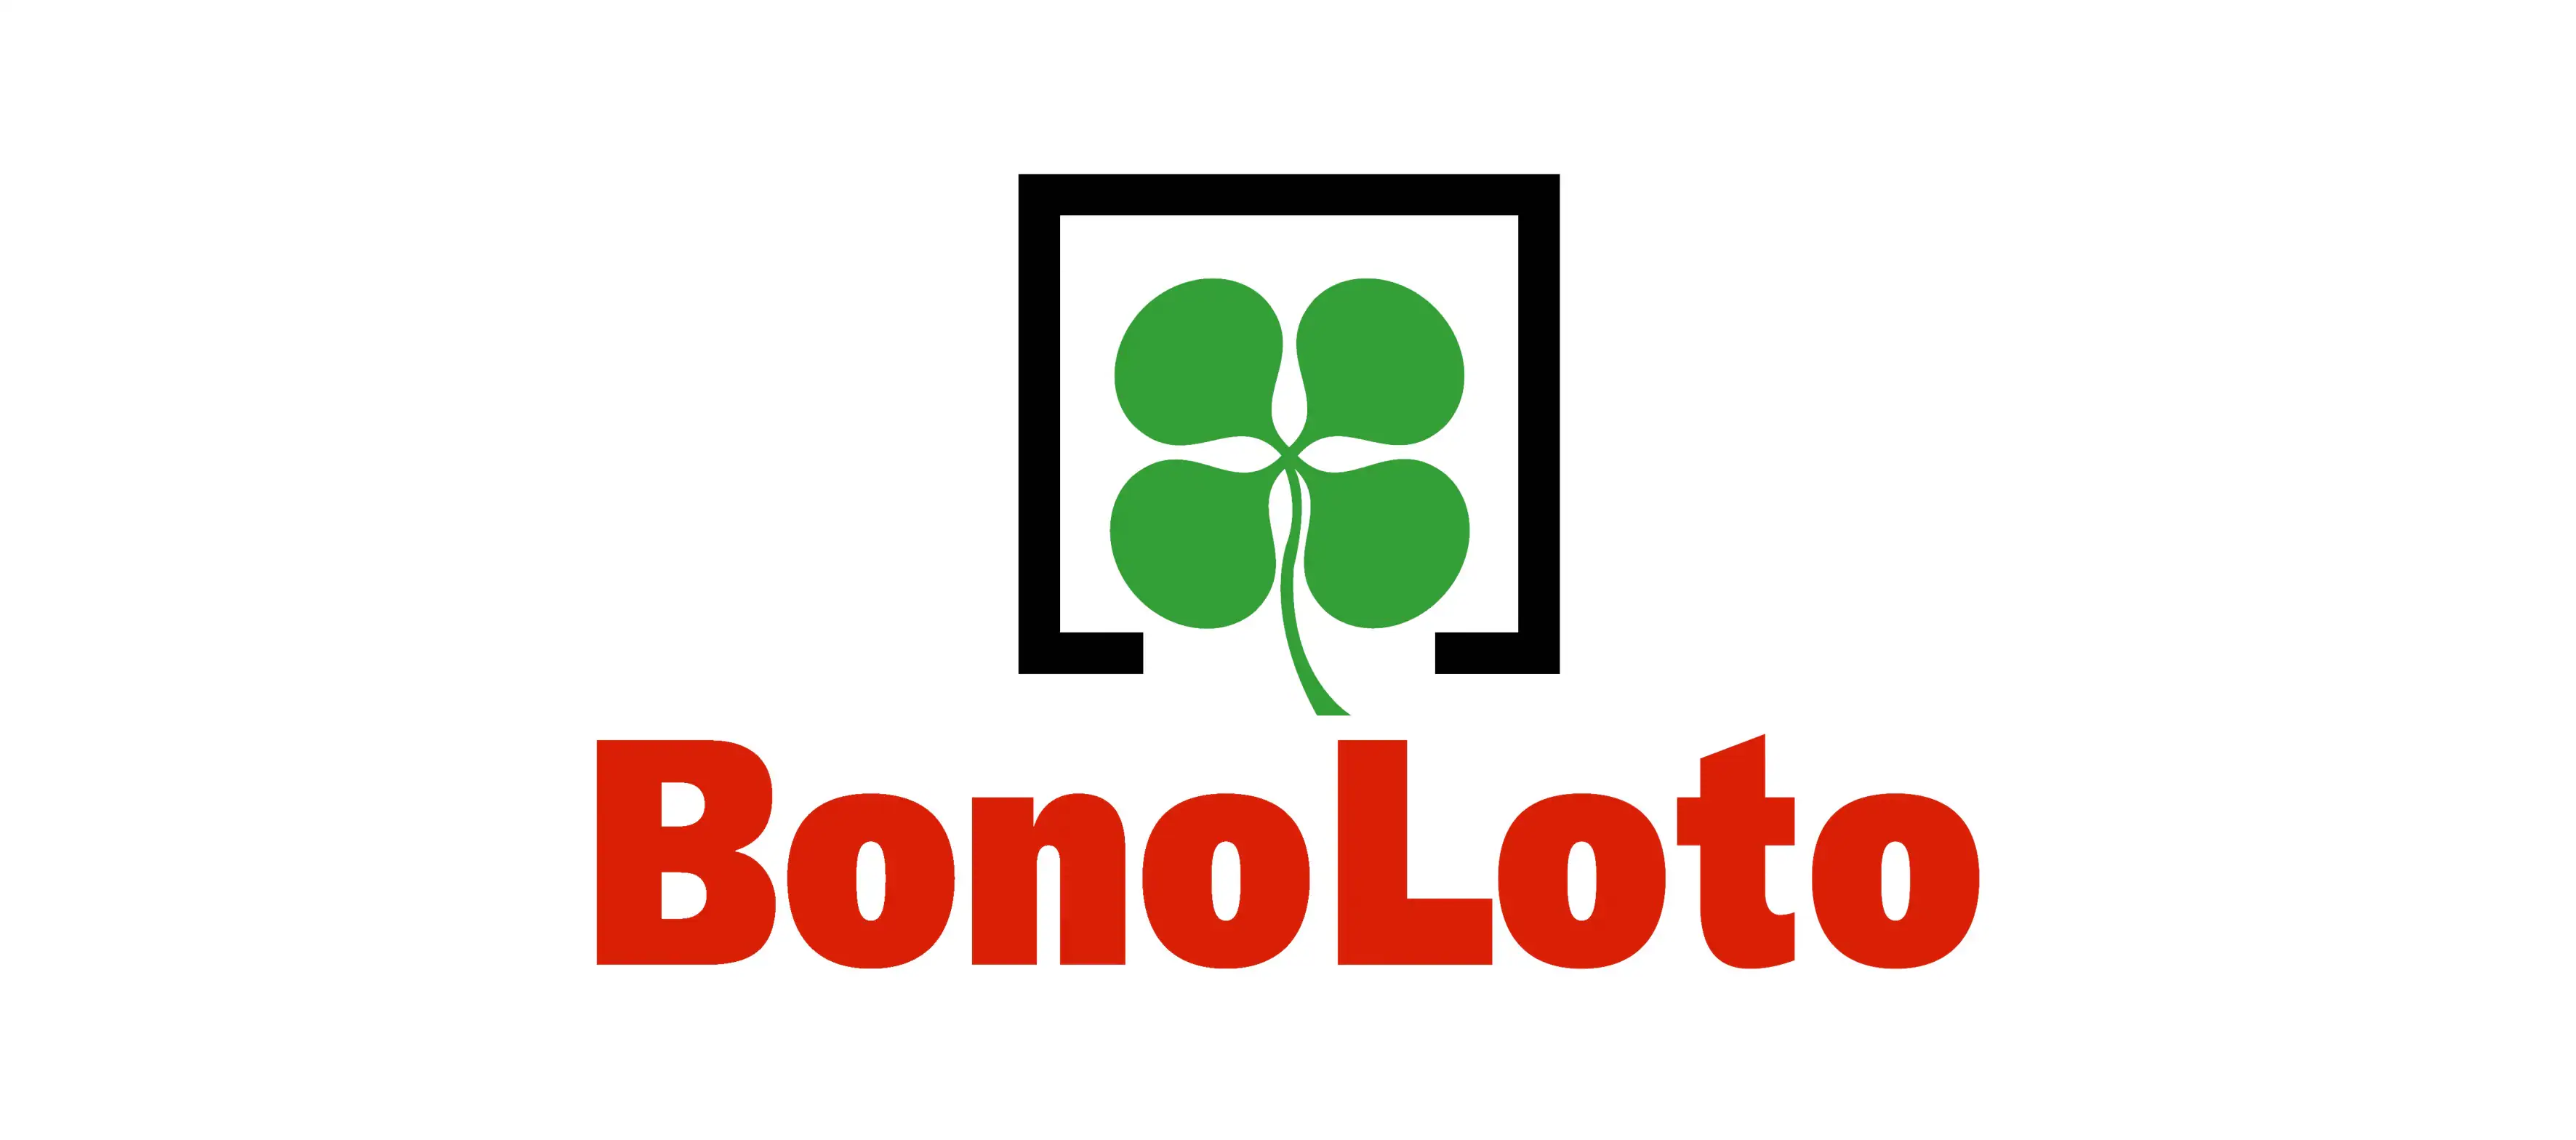 Resultados de la Bonoloto de hoy 26 de julio: comprobar combinación ganadora del viernes